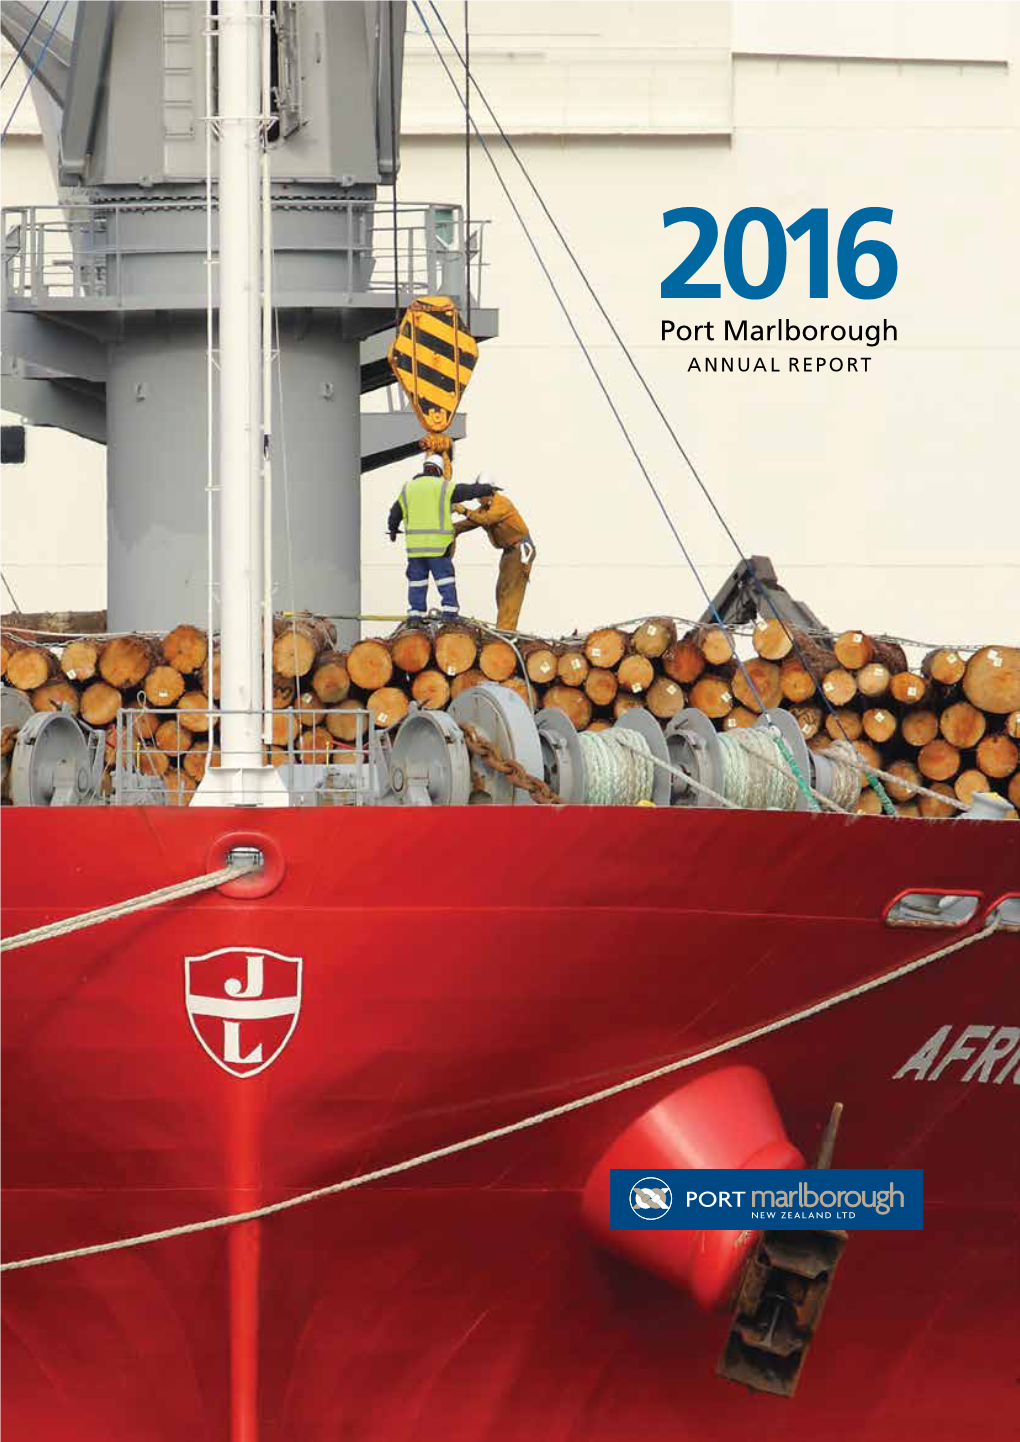 Port Marlborough 2016 Annual Report